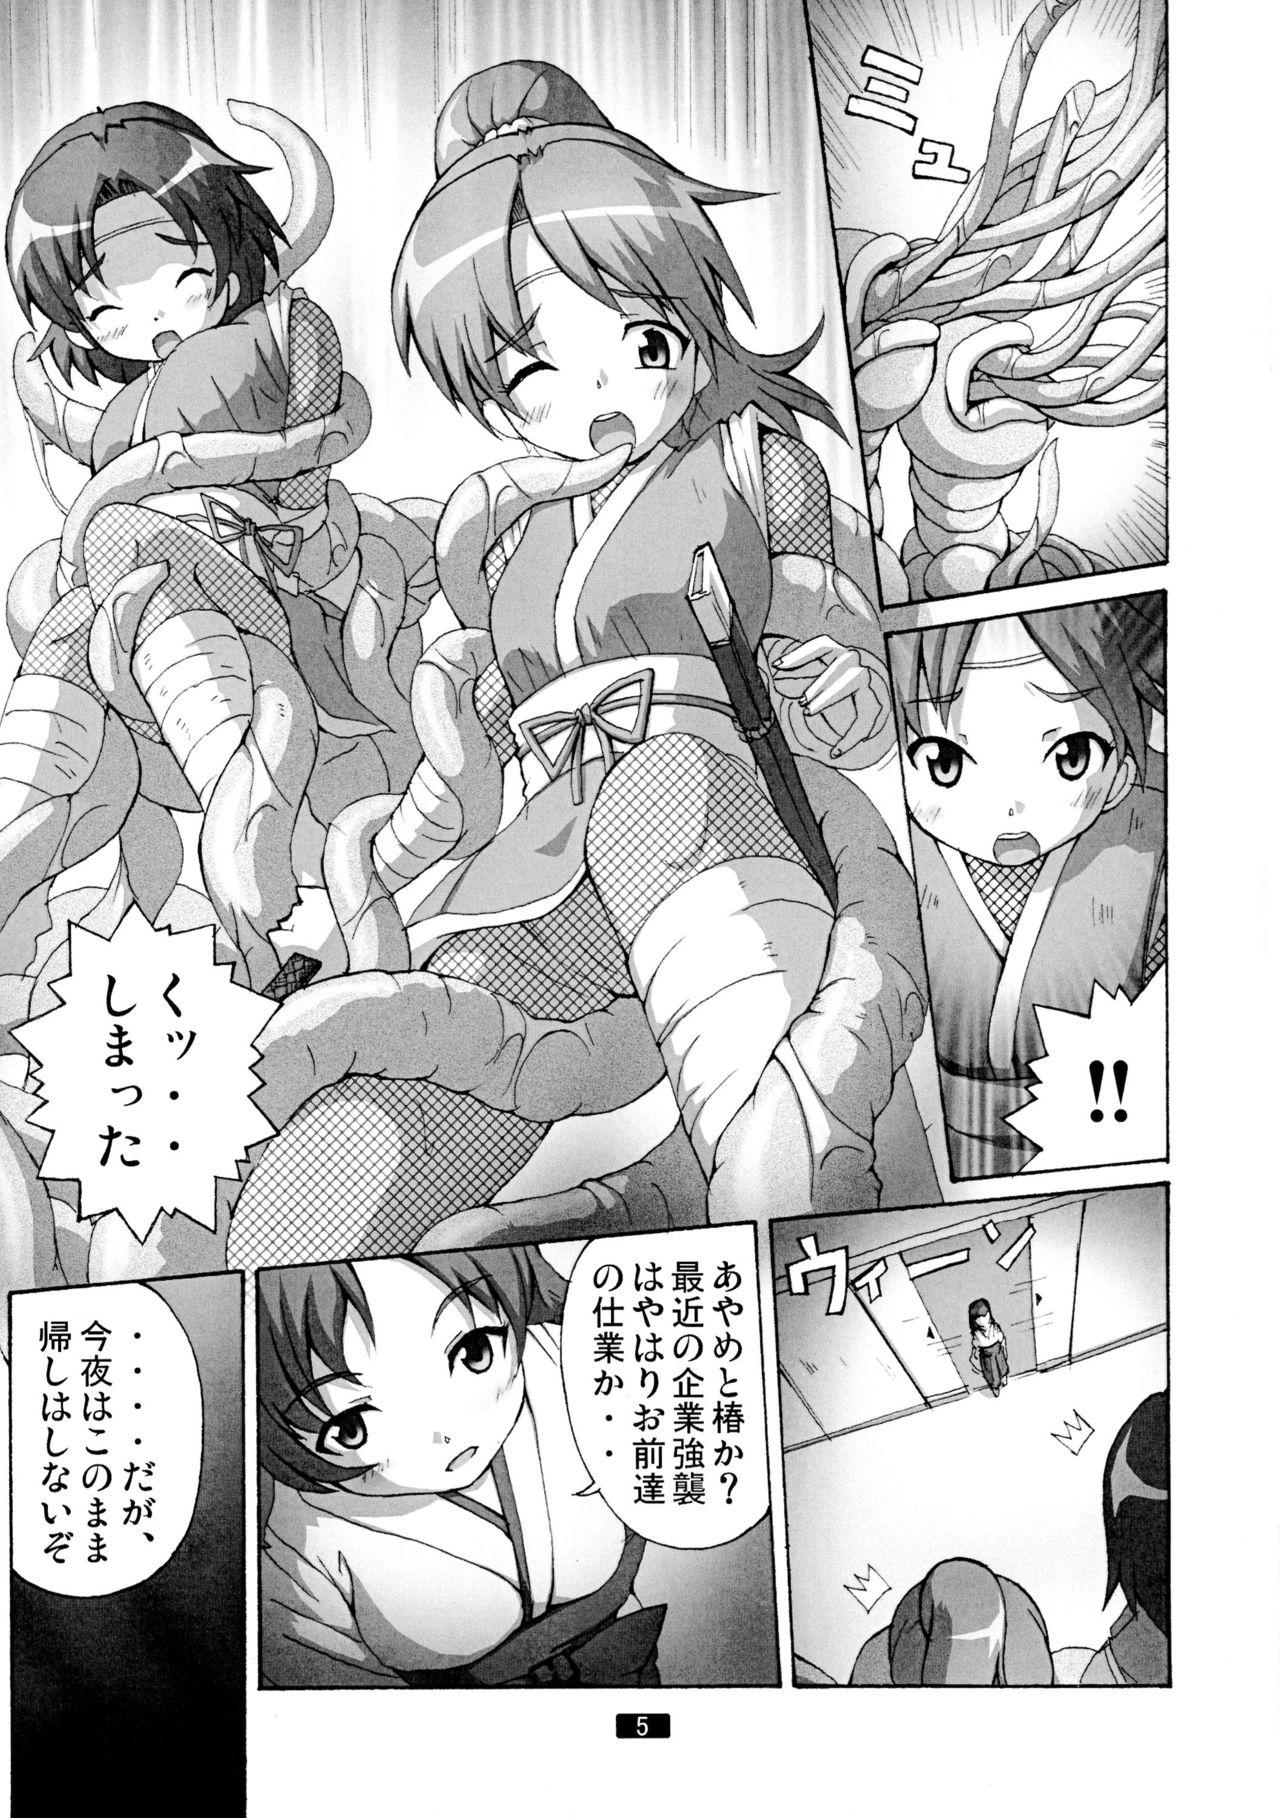 Clitoris Kaiun no Taimashi Nozomi 5 1/ 2 Brunette - Page 5